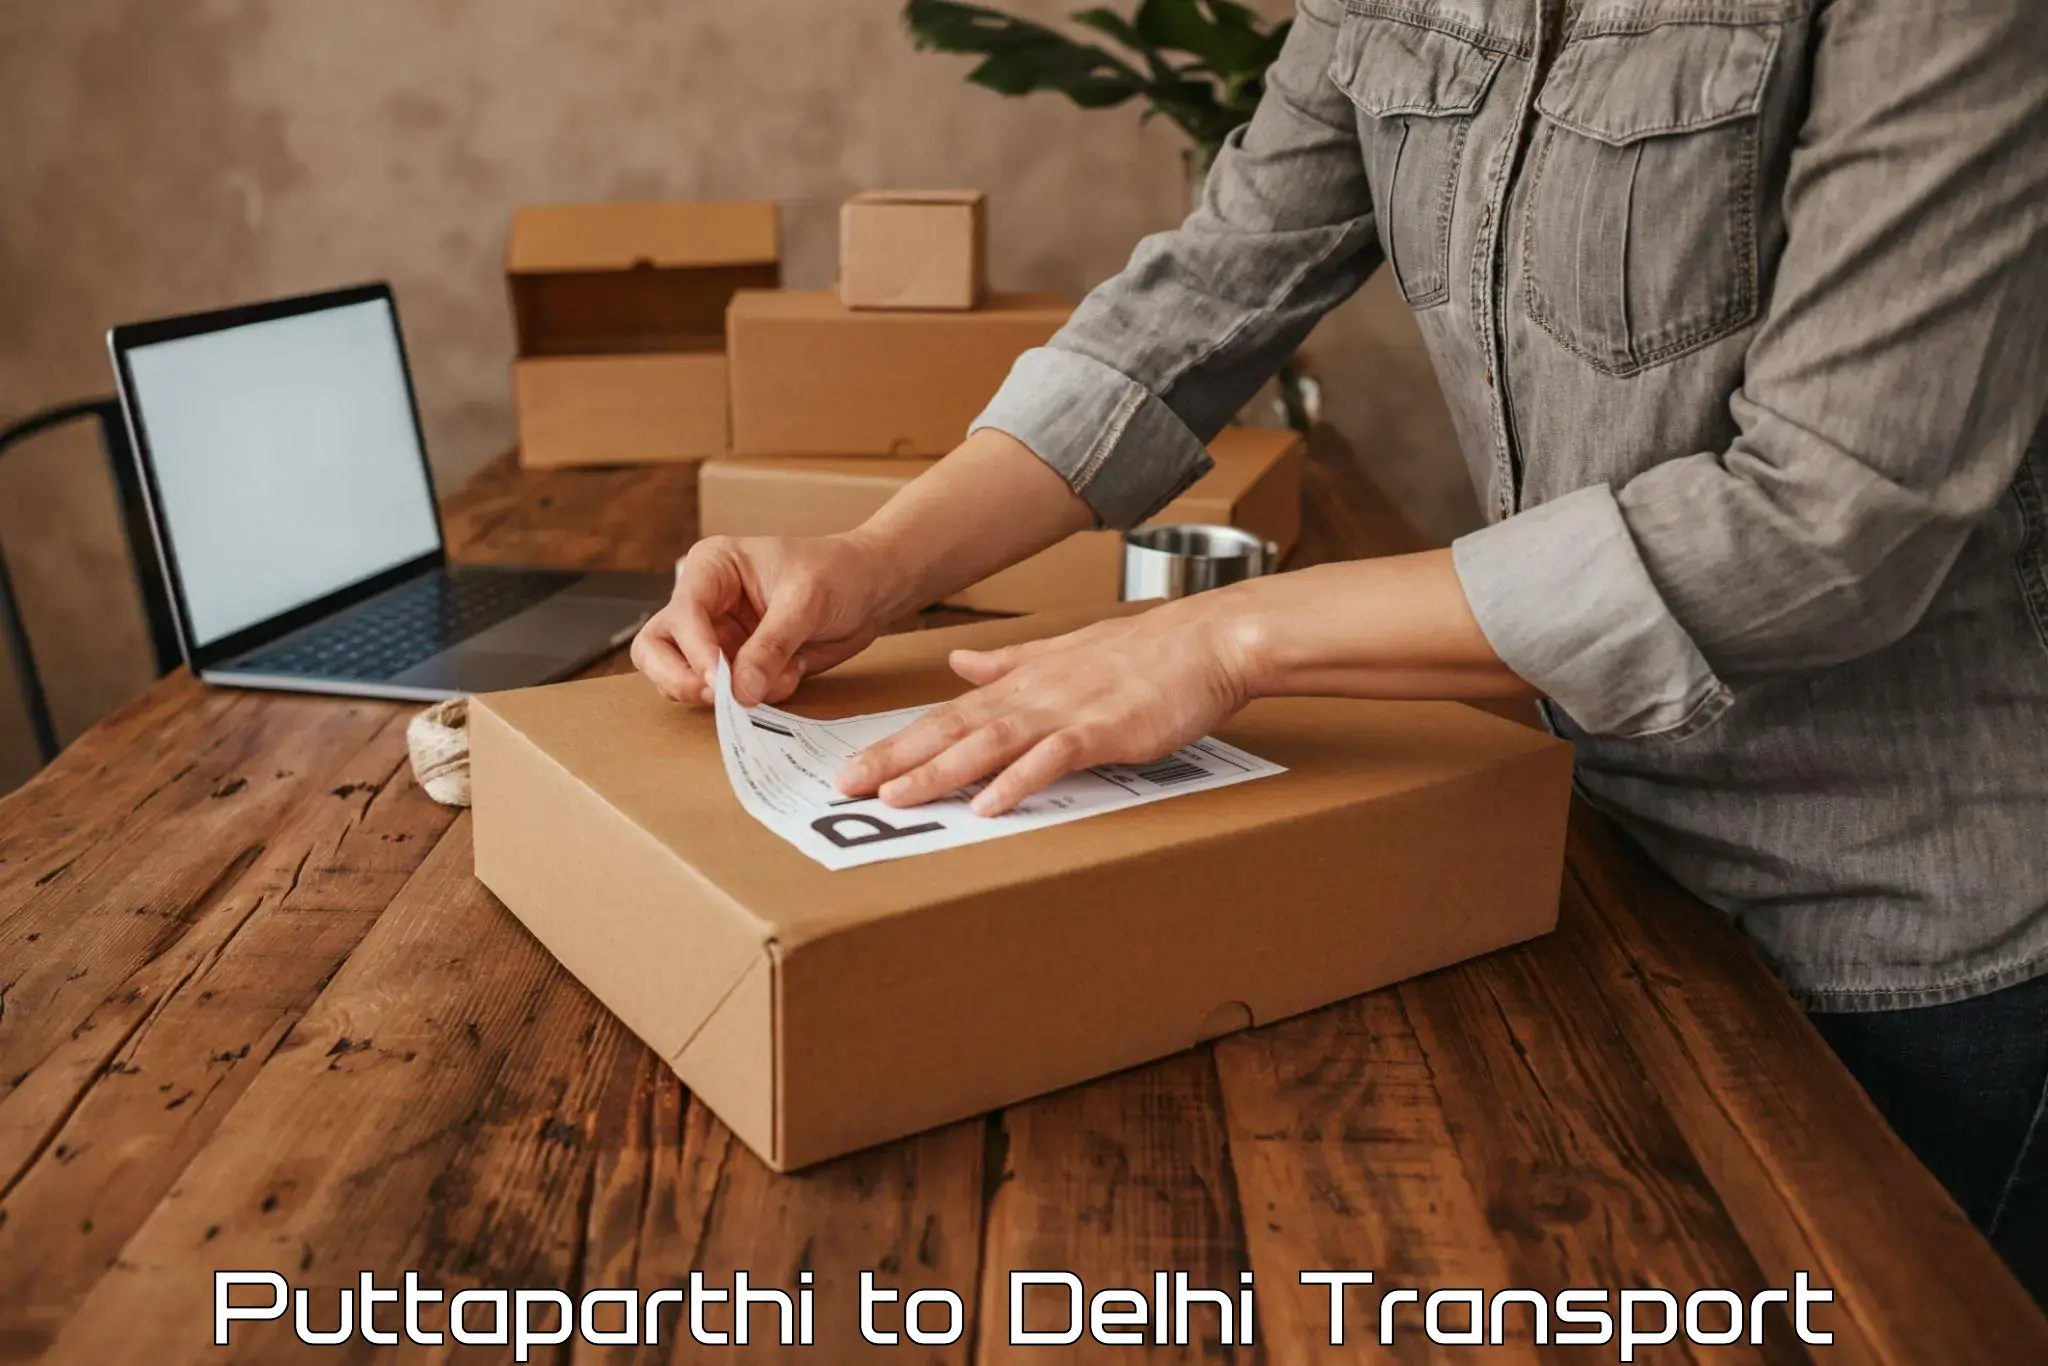 Two wheeler parcel service Puttaparthi to NIT Delhi